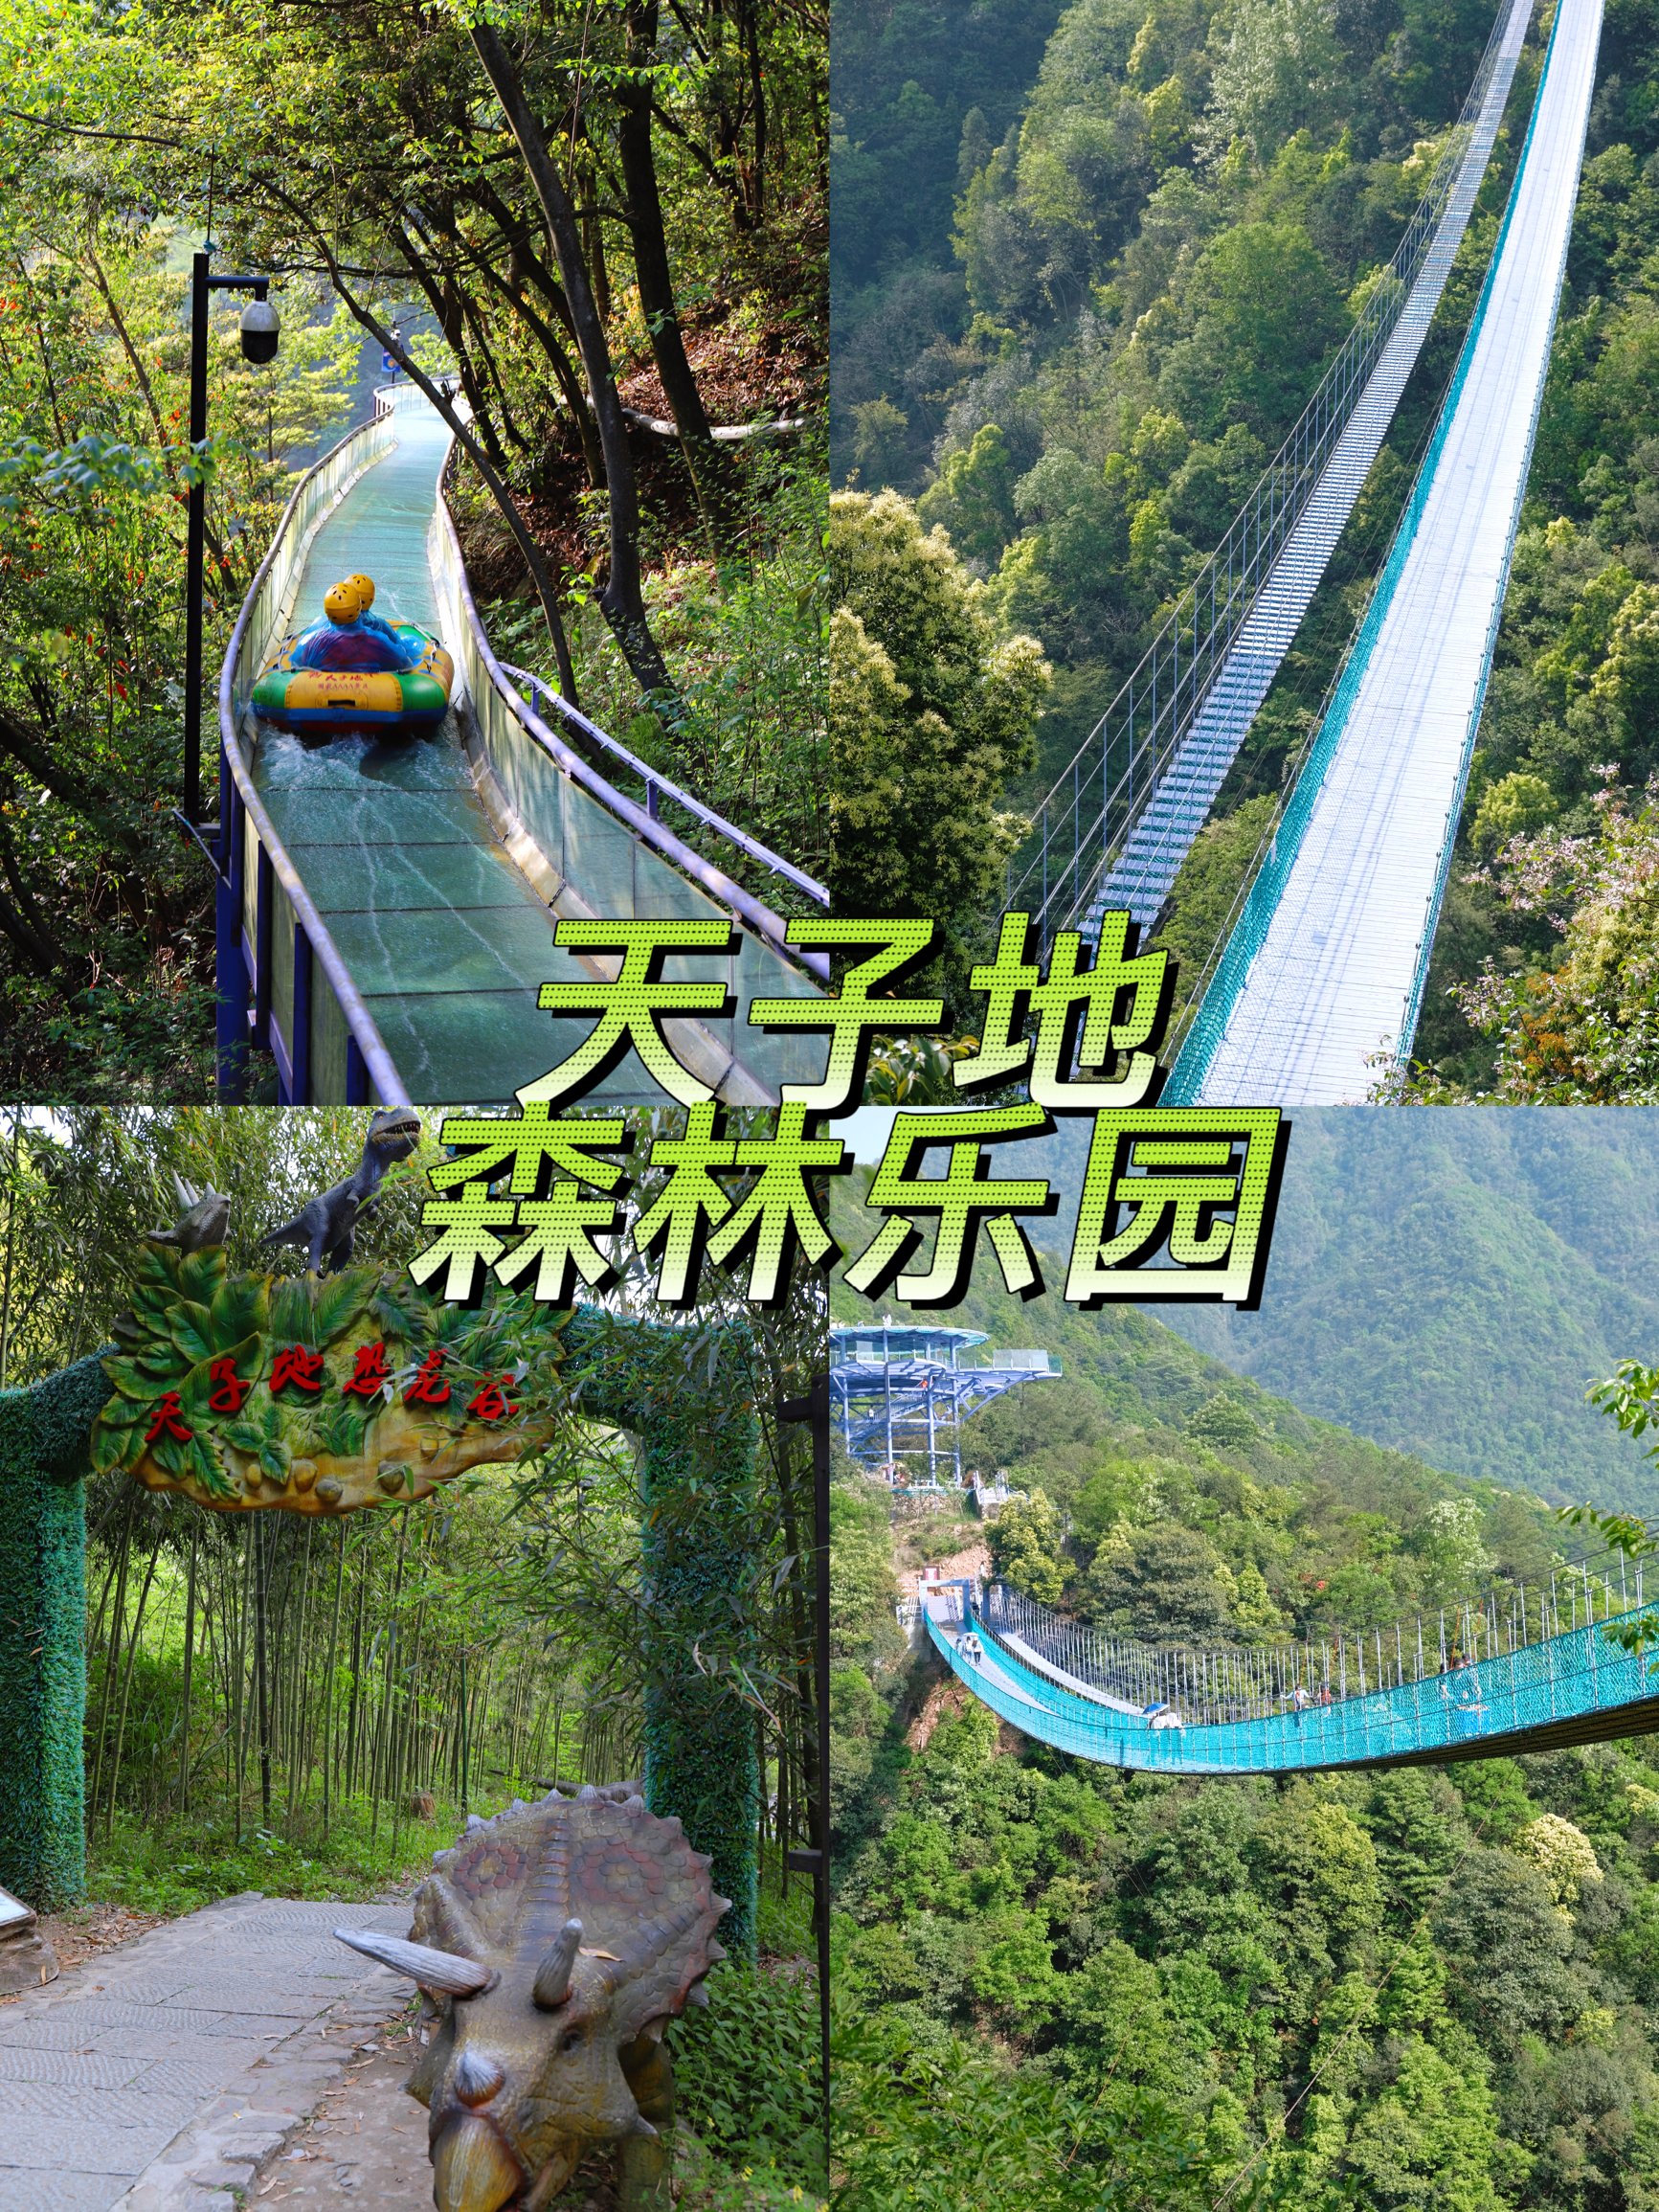 拥抱大自然 探索杭州天子地森林乐园